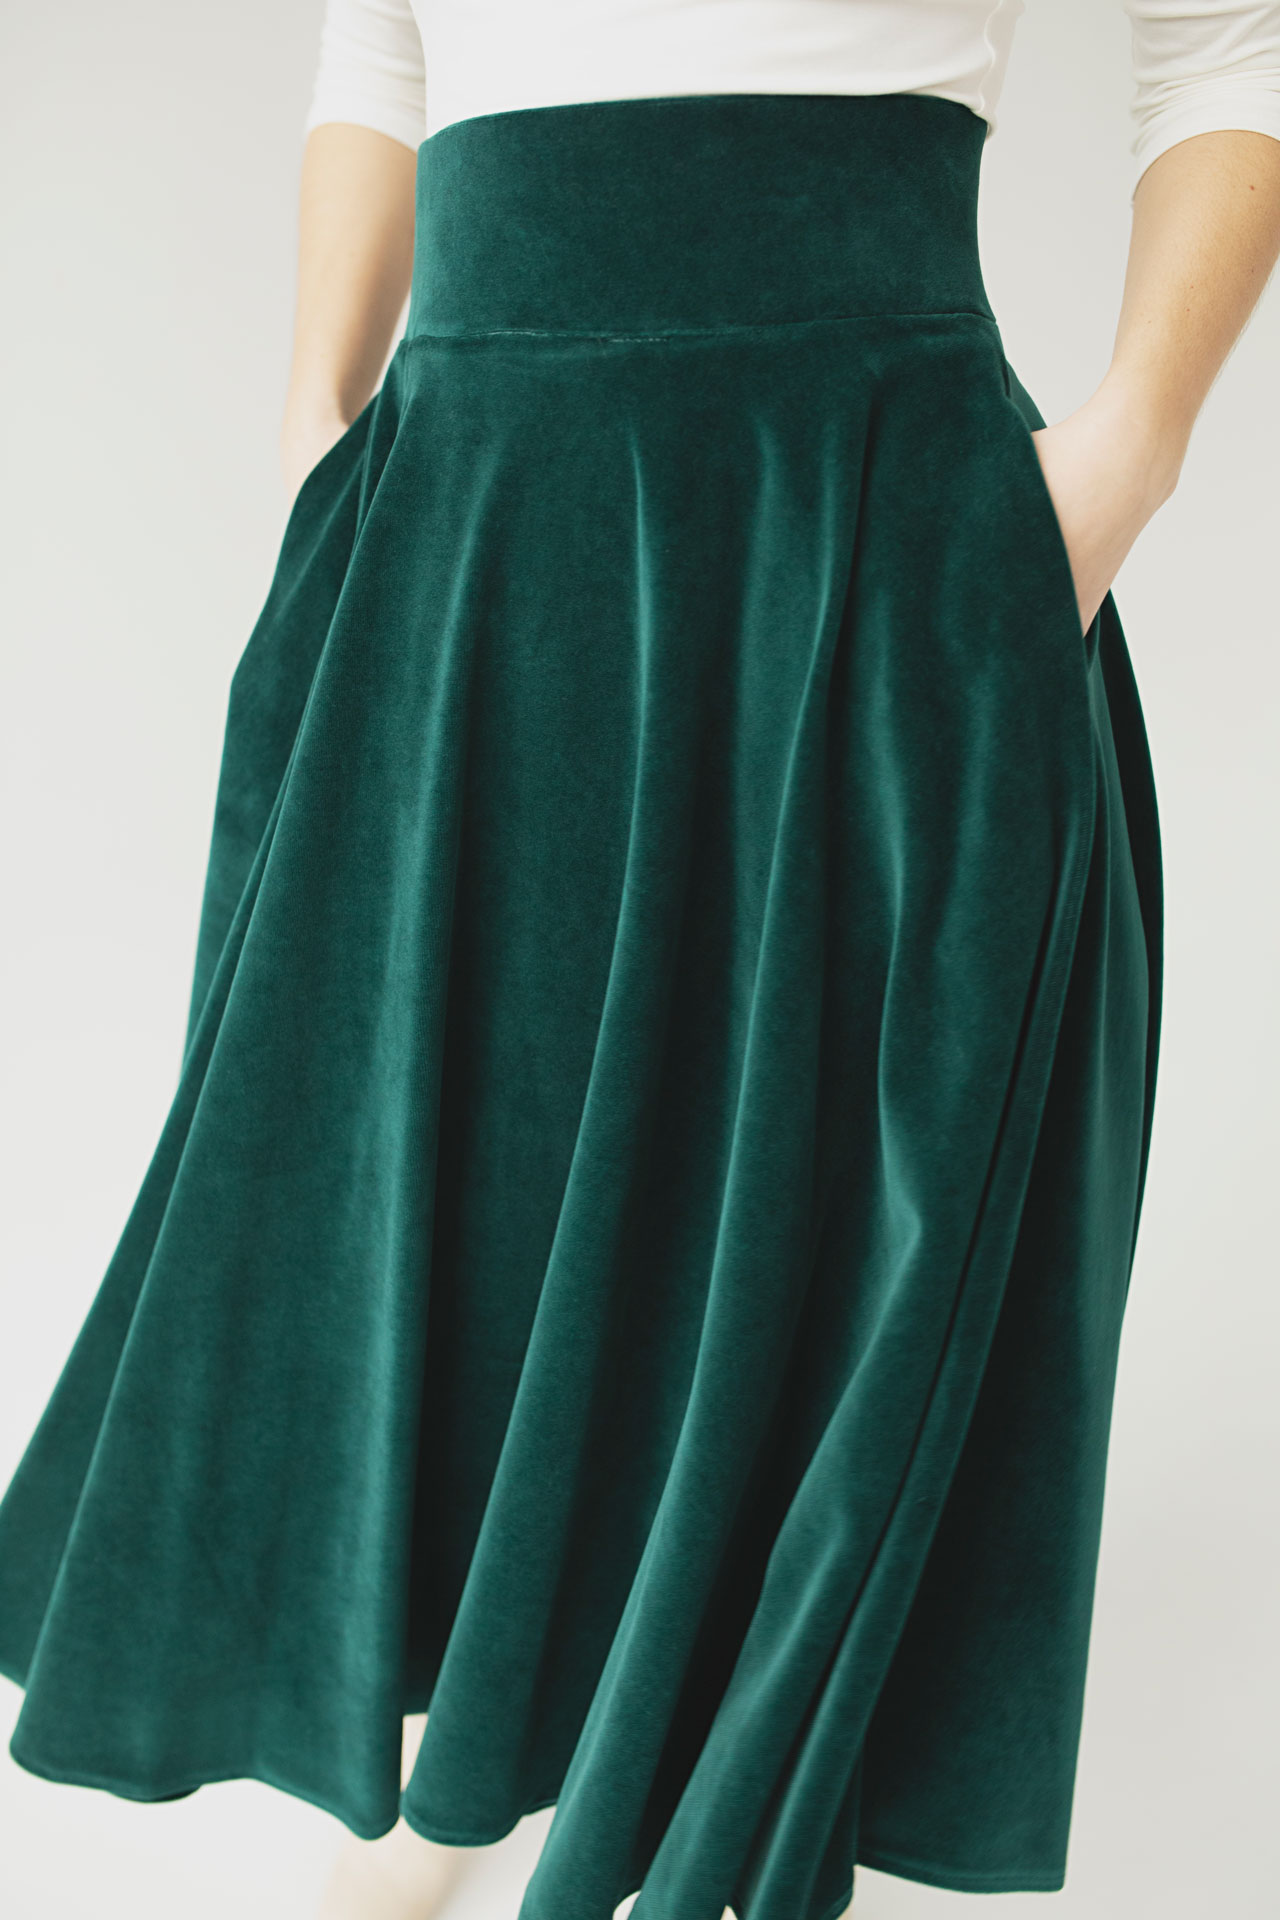 Zielona spódnica welurowa midi, aksamitna z weluru rozkloszowana